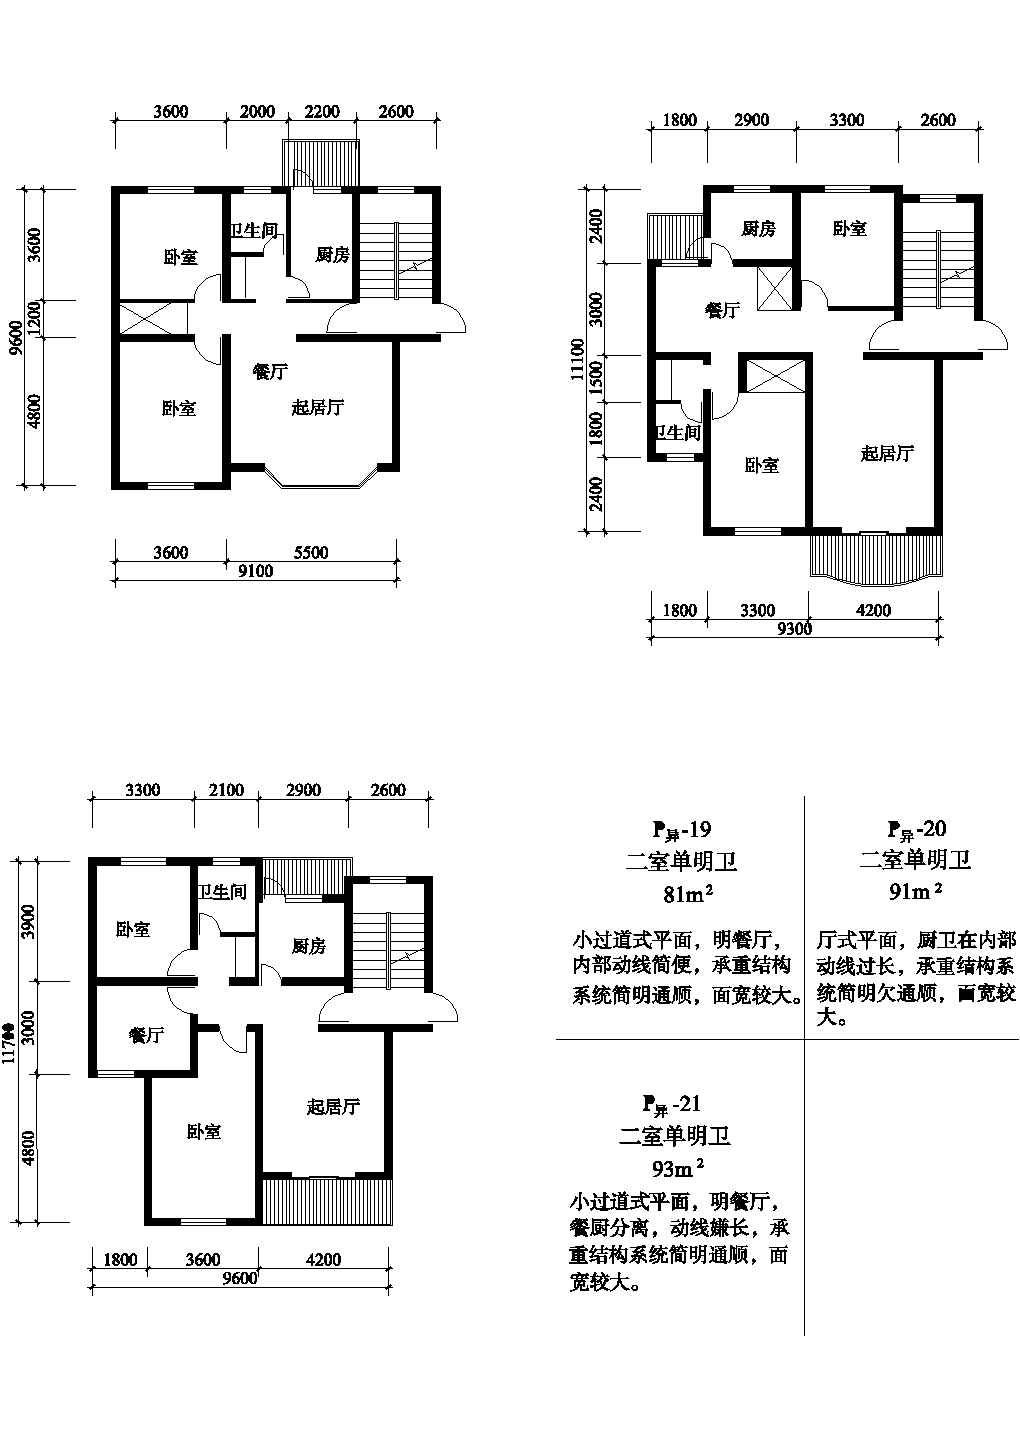 二室81/91/93平方单元式住宅平面图纸